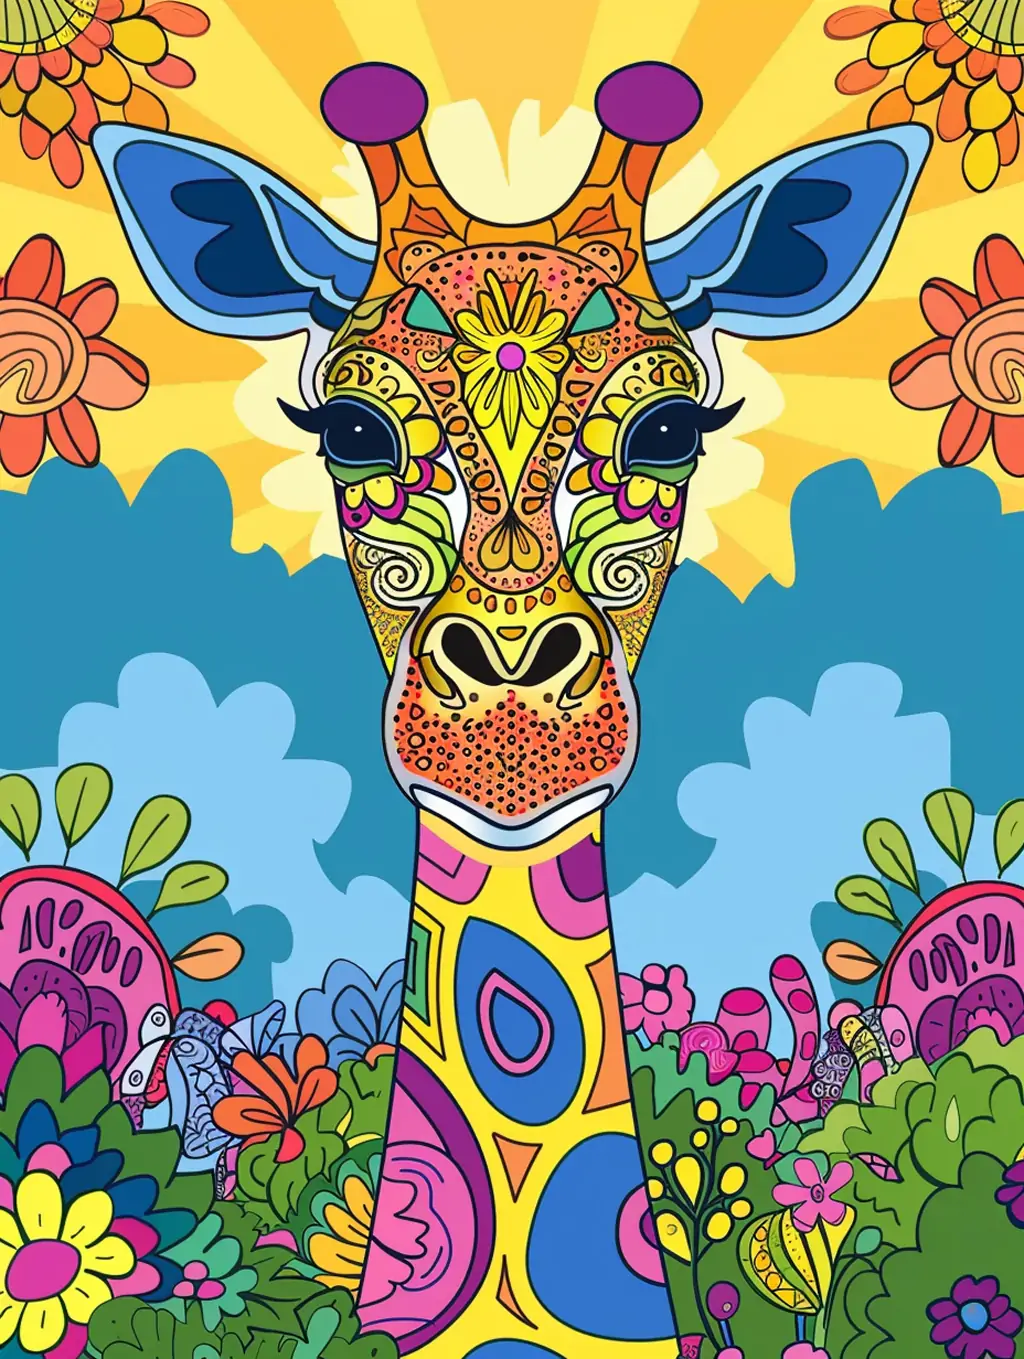 创意手绘彩色卡通儿童动物书籍画册封面海报midjourney关键词咒语-Ai宇宙吧-